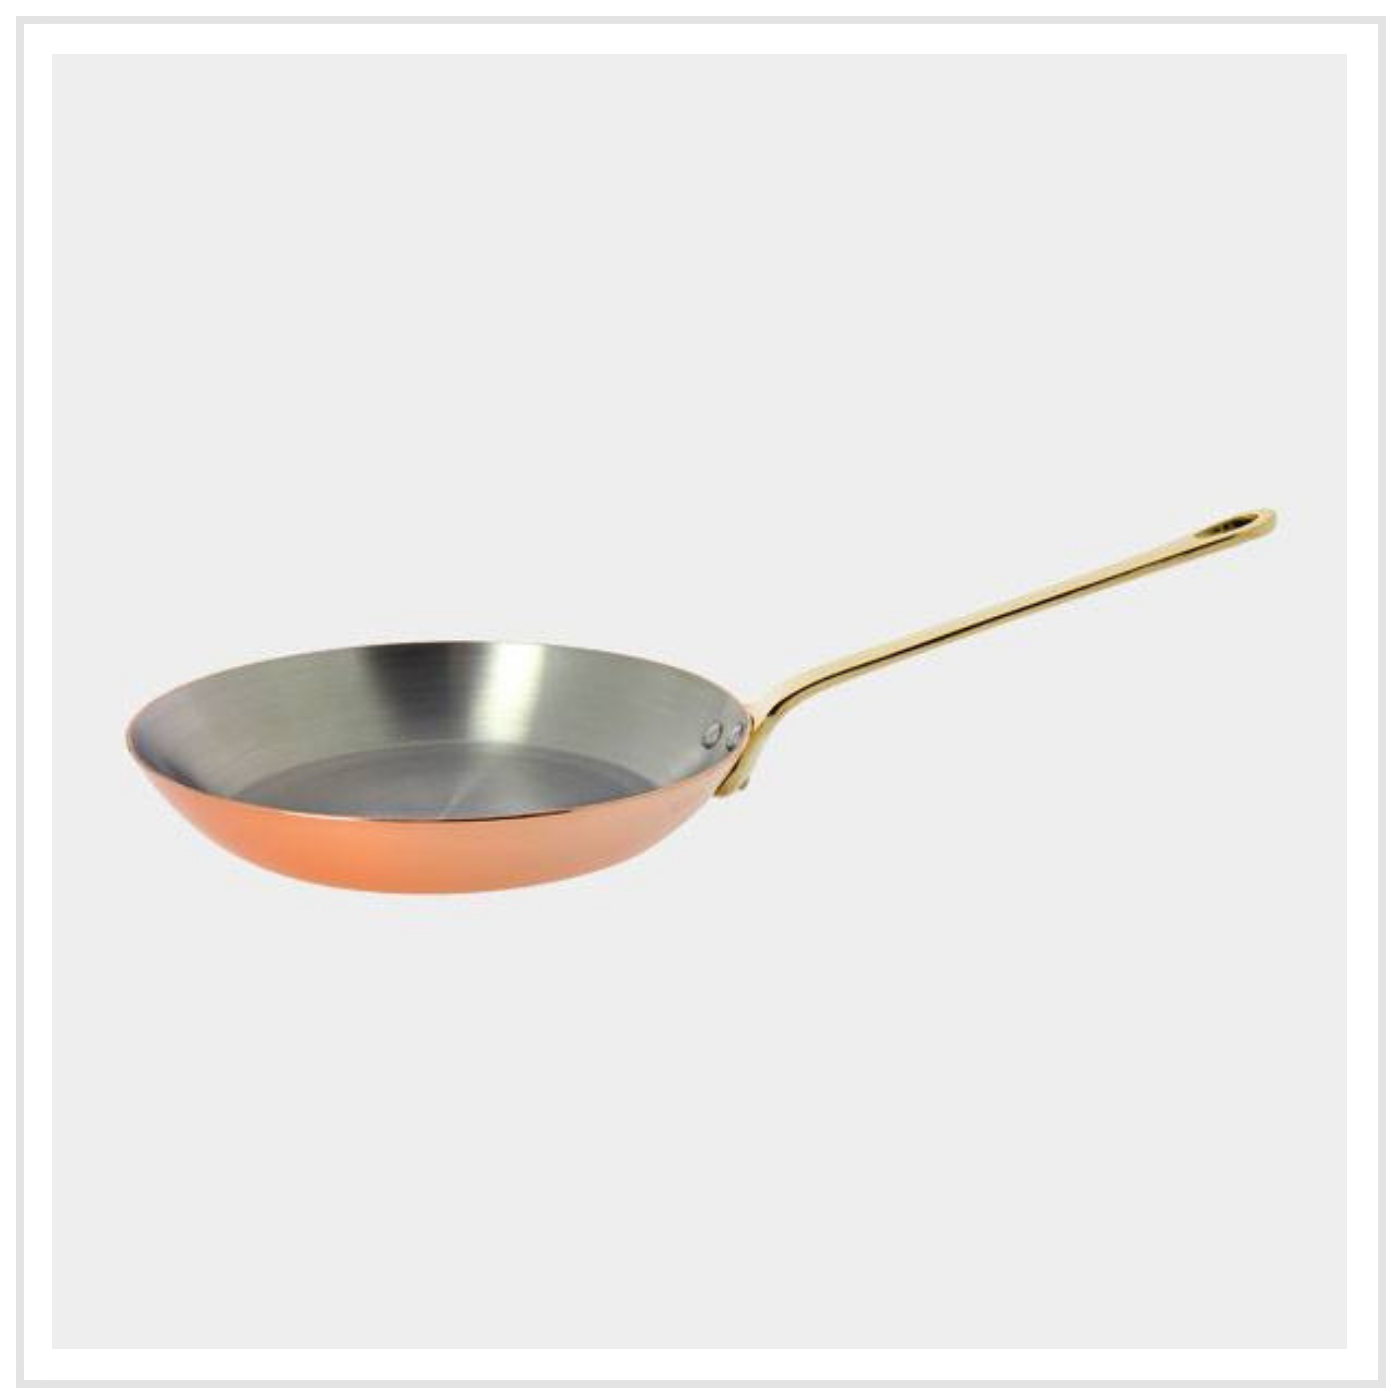 De Buyer Copper Frying Pan with Bronze Handle - 28cm